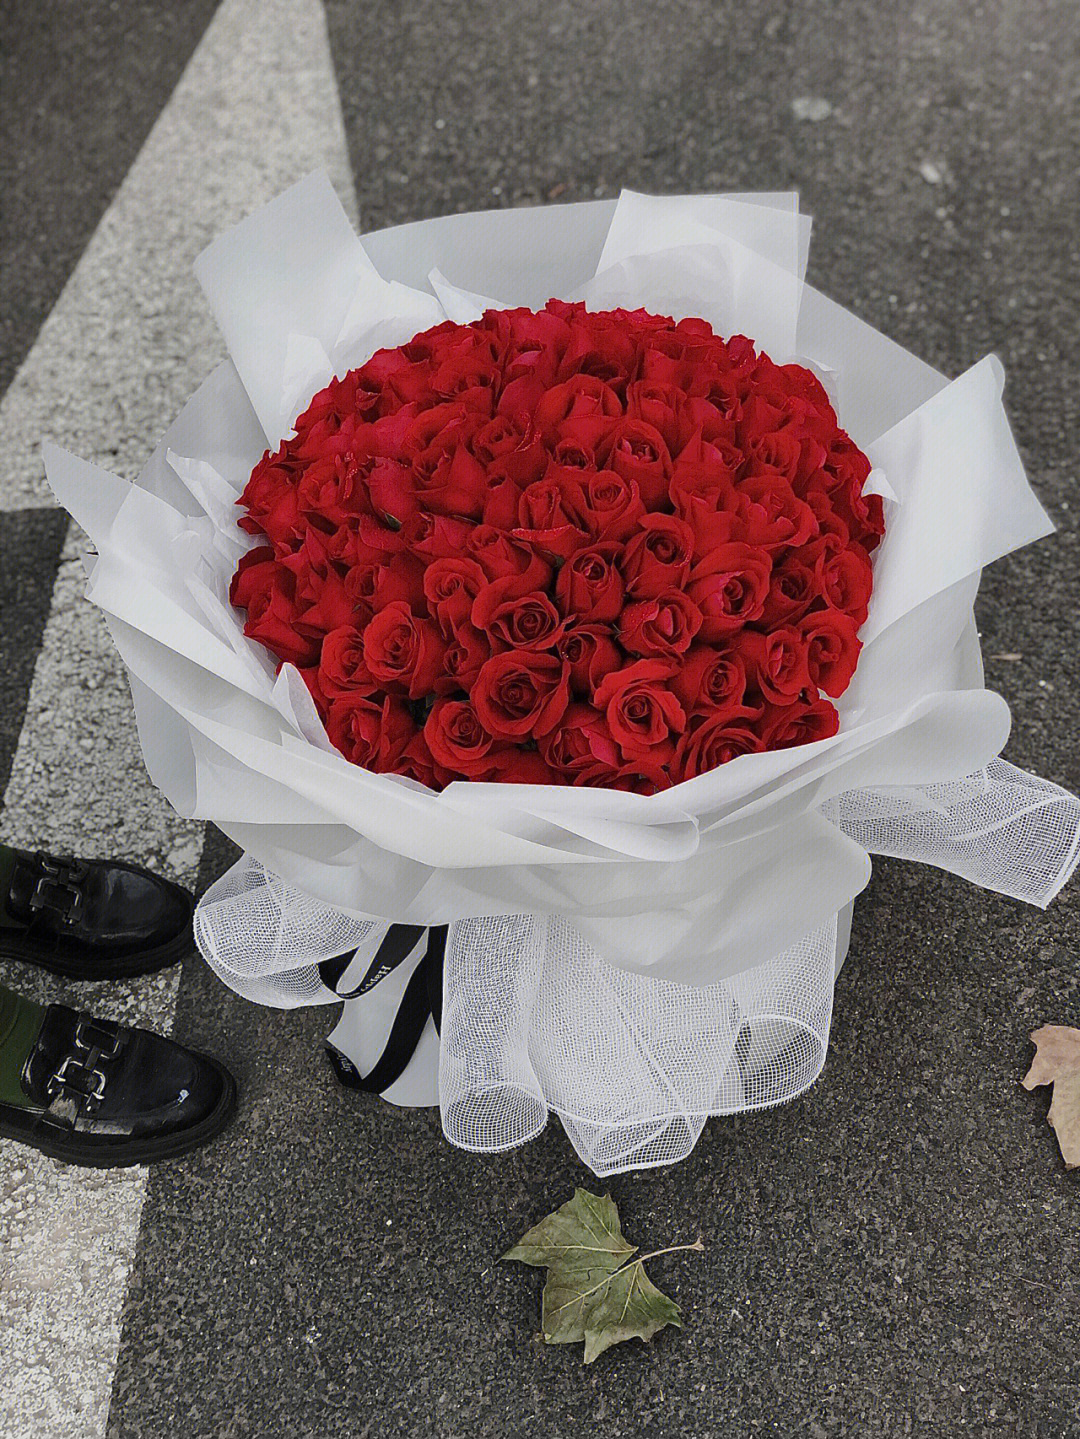 52朵红玫瑰花束寓意图片